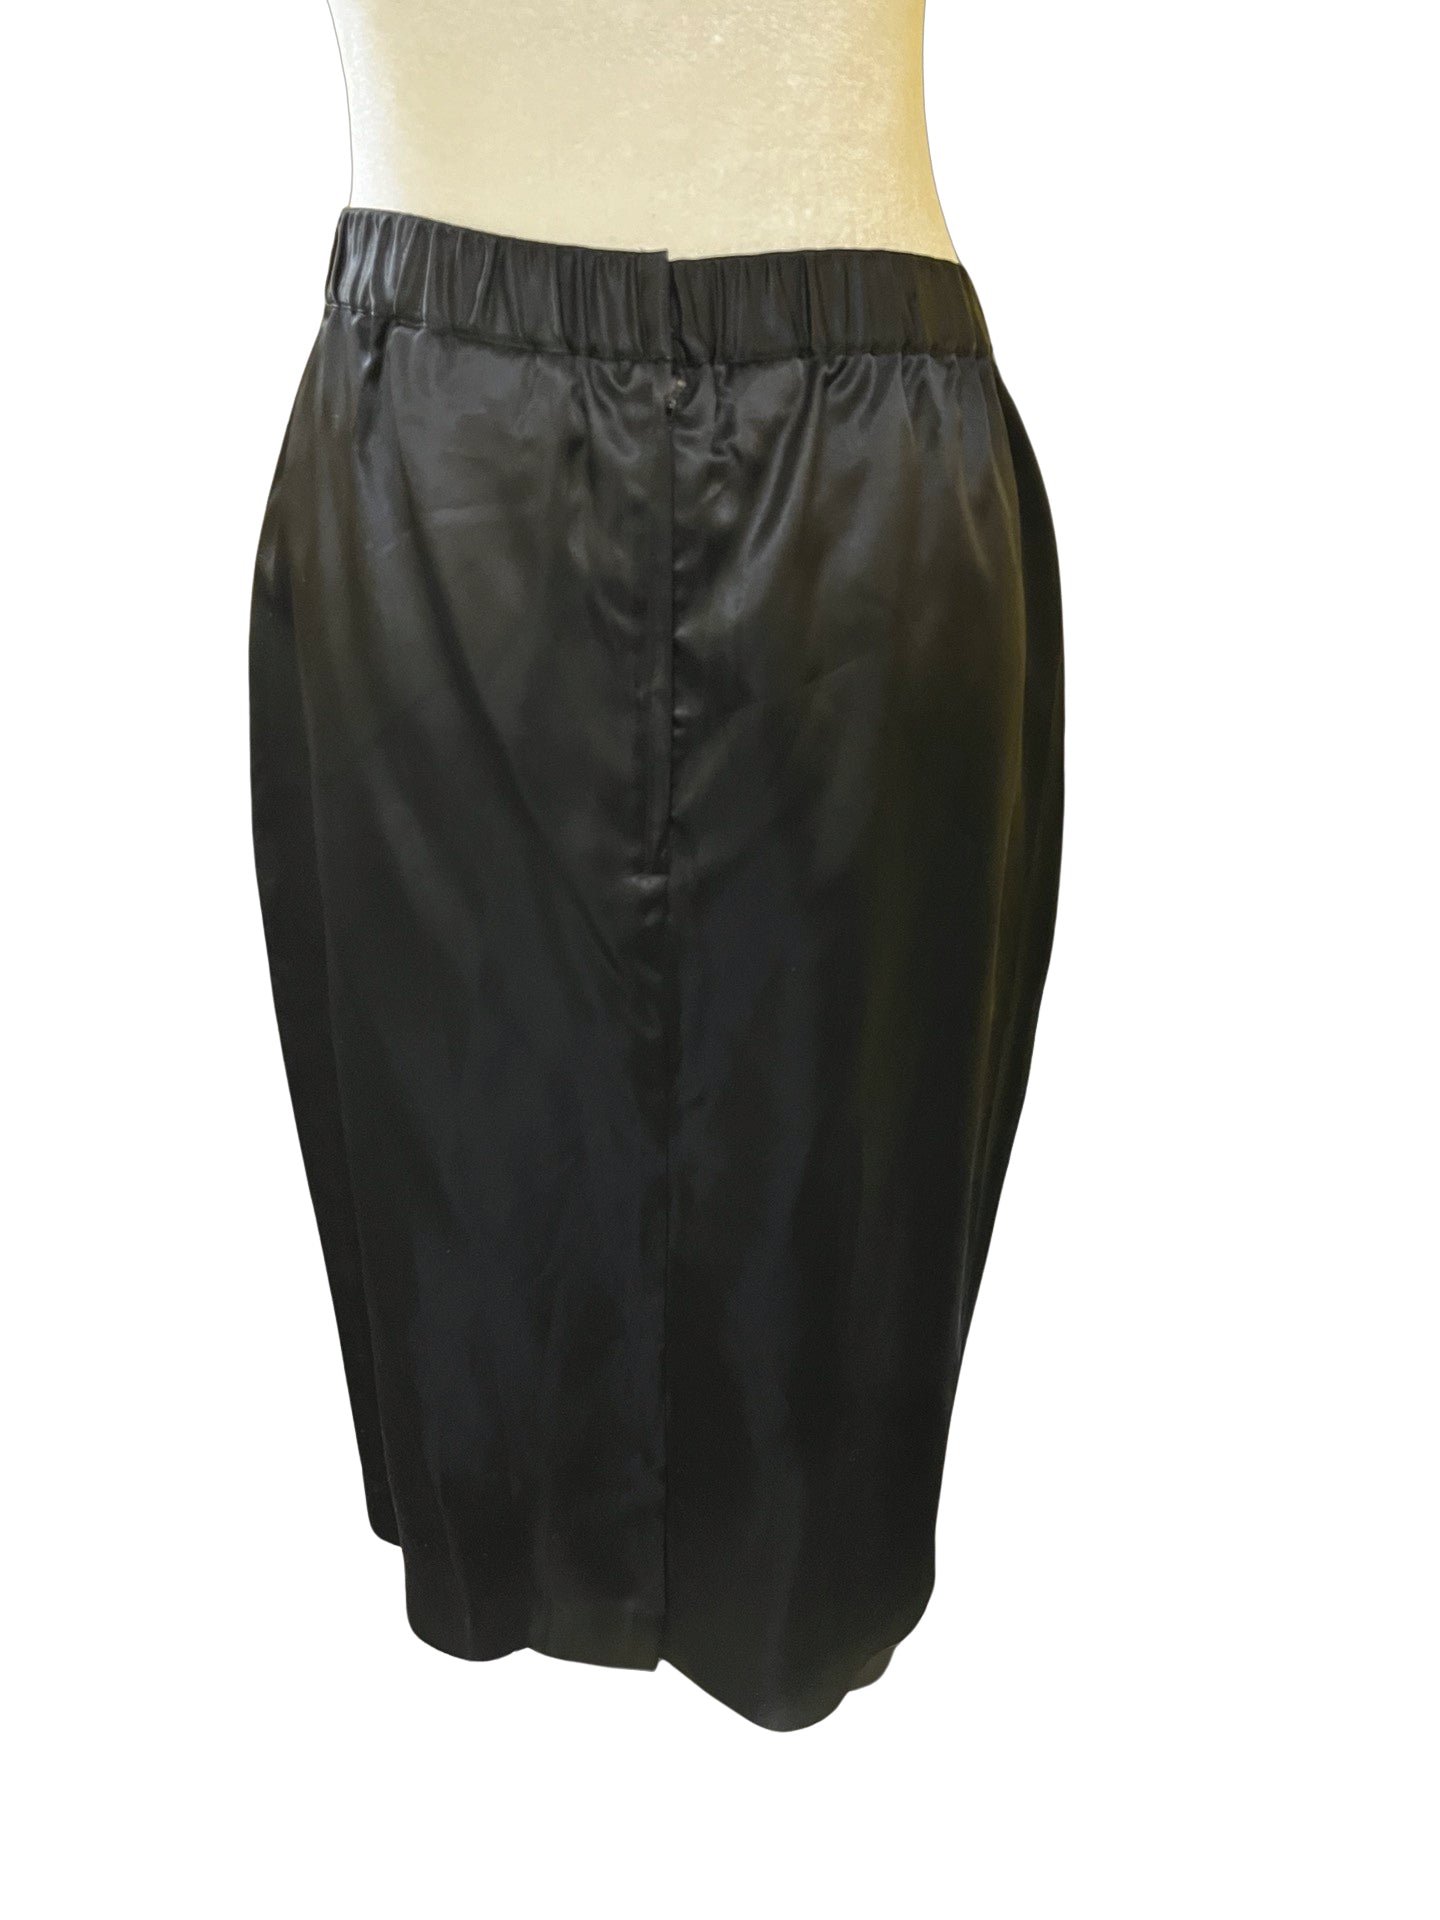 Size 12 Neiman Marcus Skirt